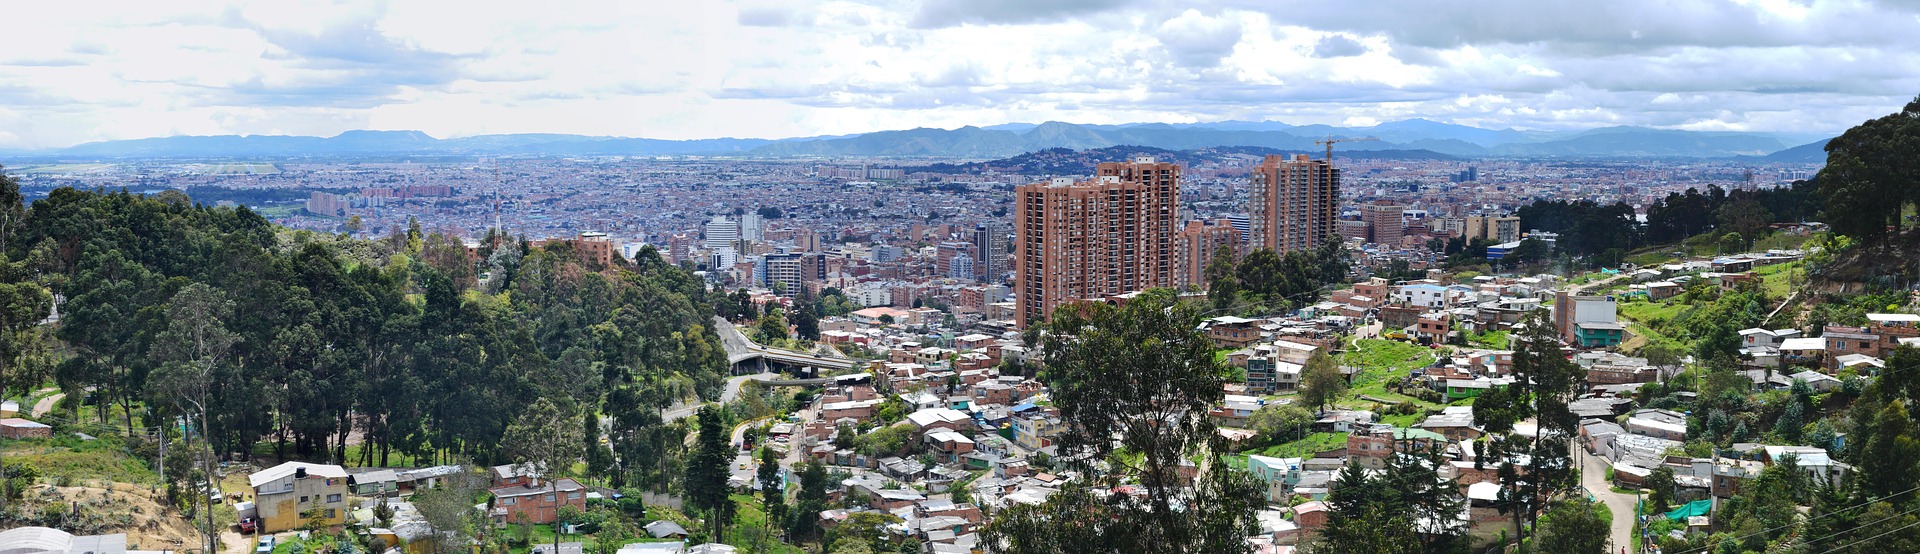 Bogotanos pesimistas sobre la marcha actual de la ciudad